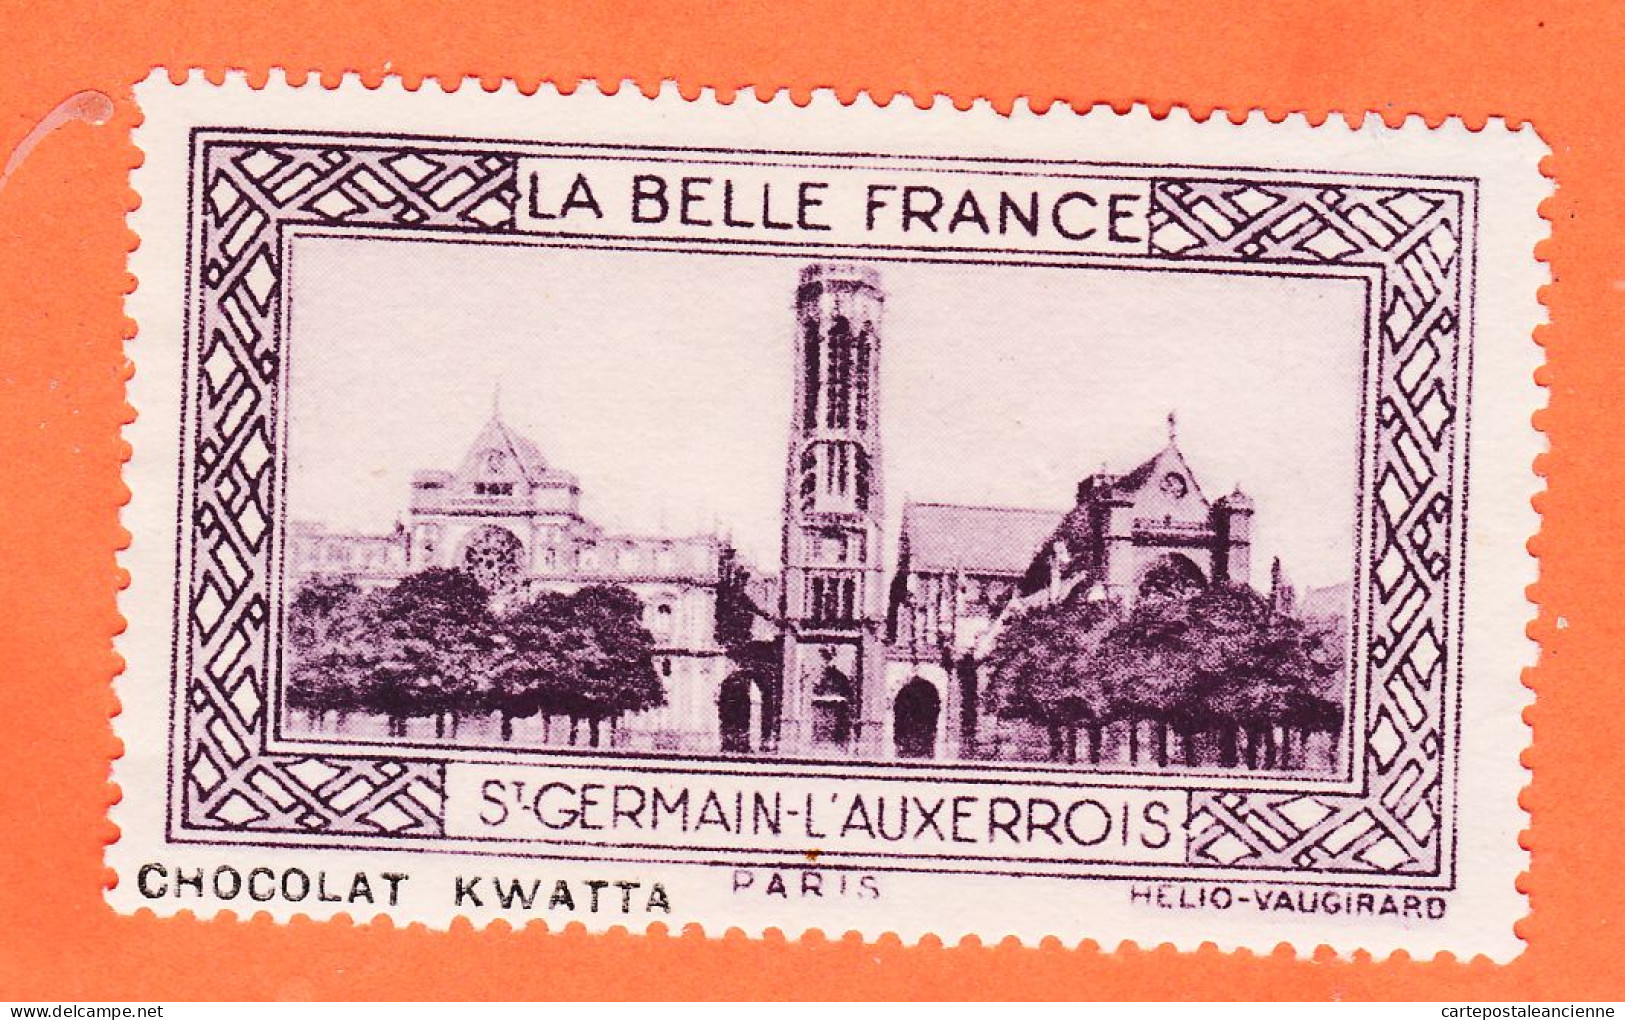 05219 / ⭐ ◉ Eglise SAINT-GERMAIN-AUXERROIS 75-Paris Pub Chocolat KWATTA Vignette Collection BELLE FRANCE HELIO-VAUGIRARD - Tourism (Labels)